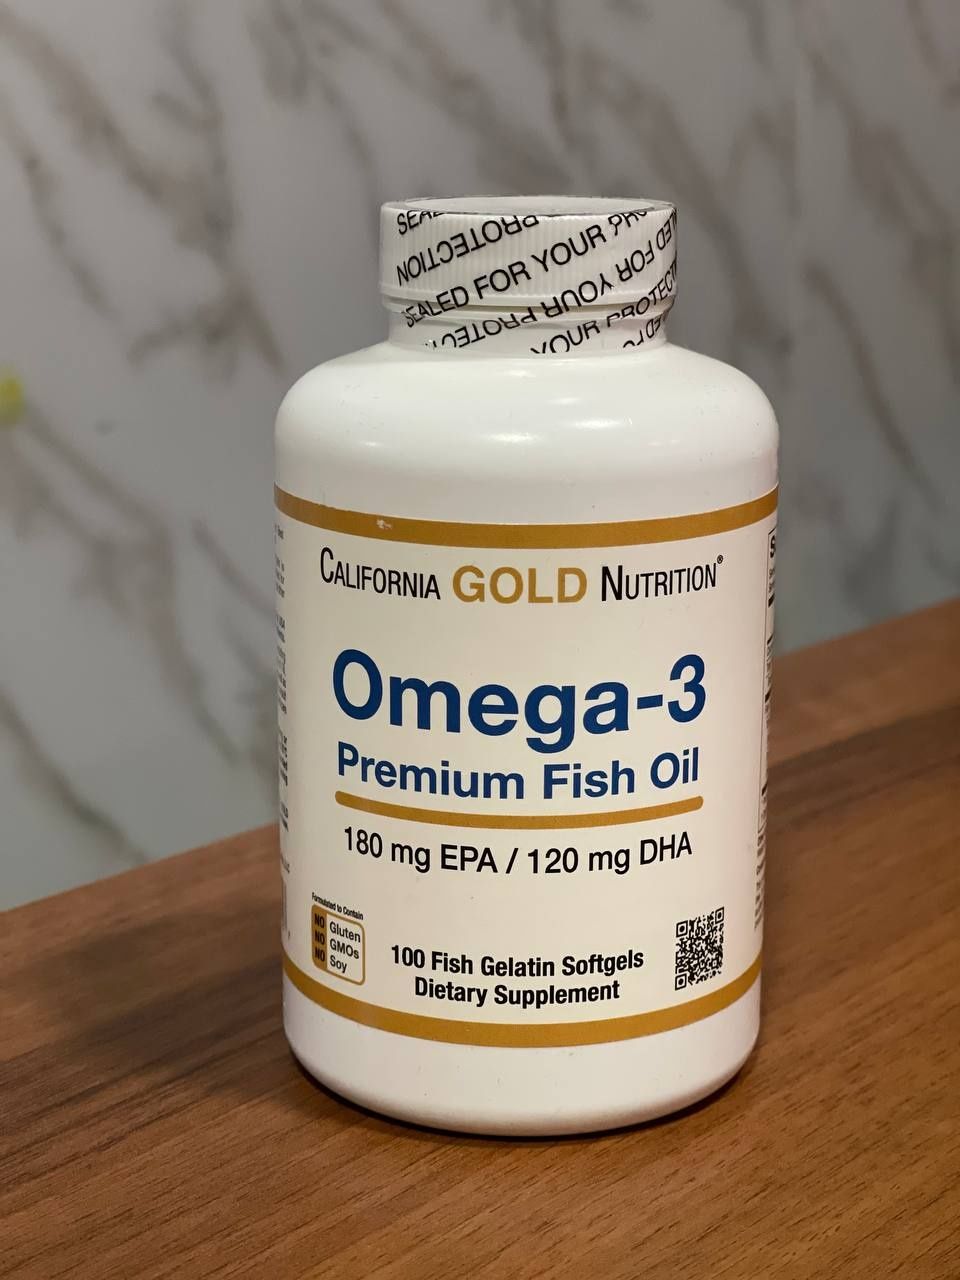 Omega, California Gold nutrition Omega 3 fish oil.